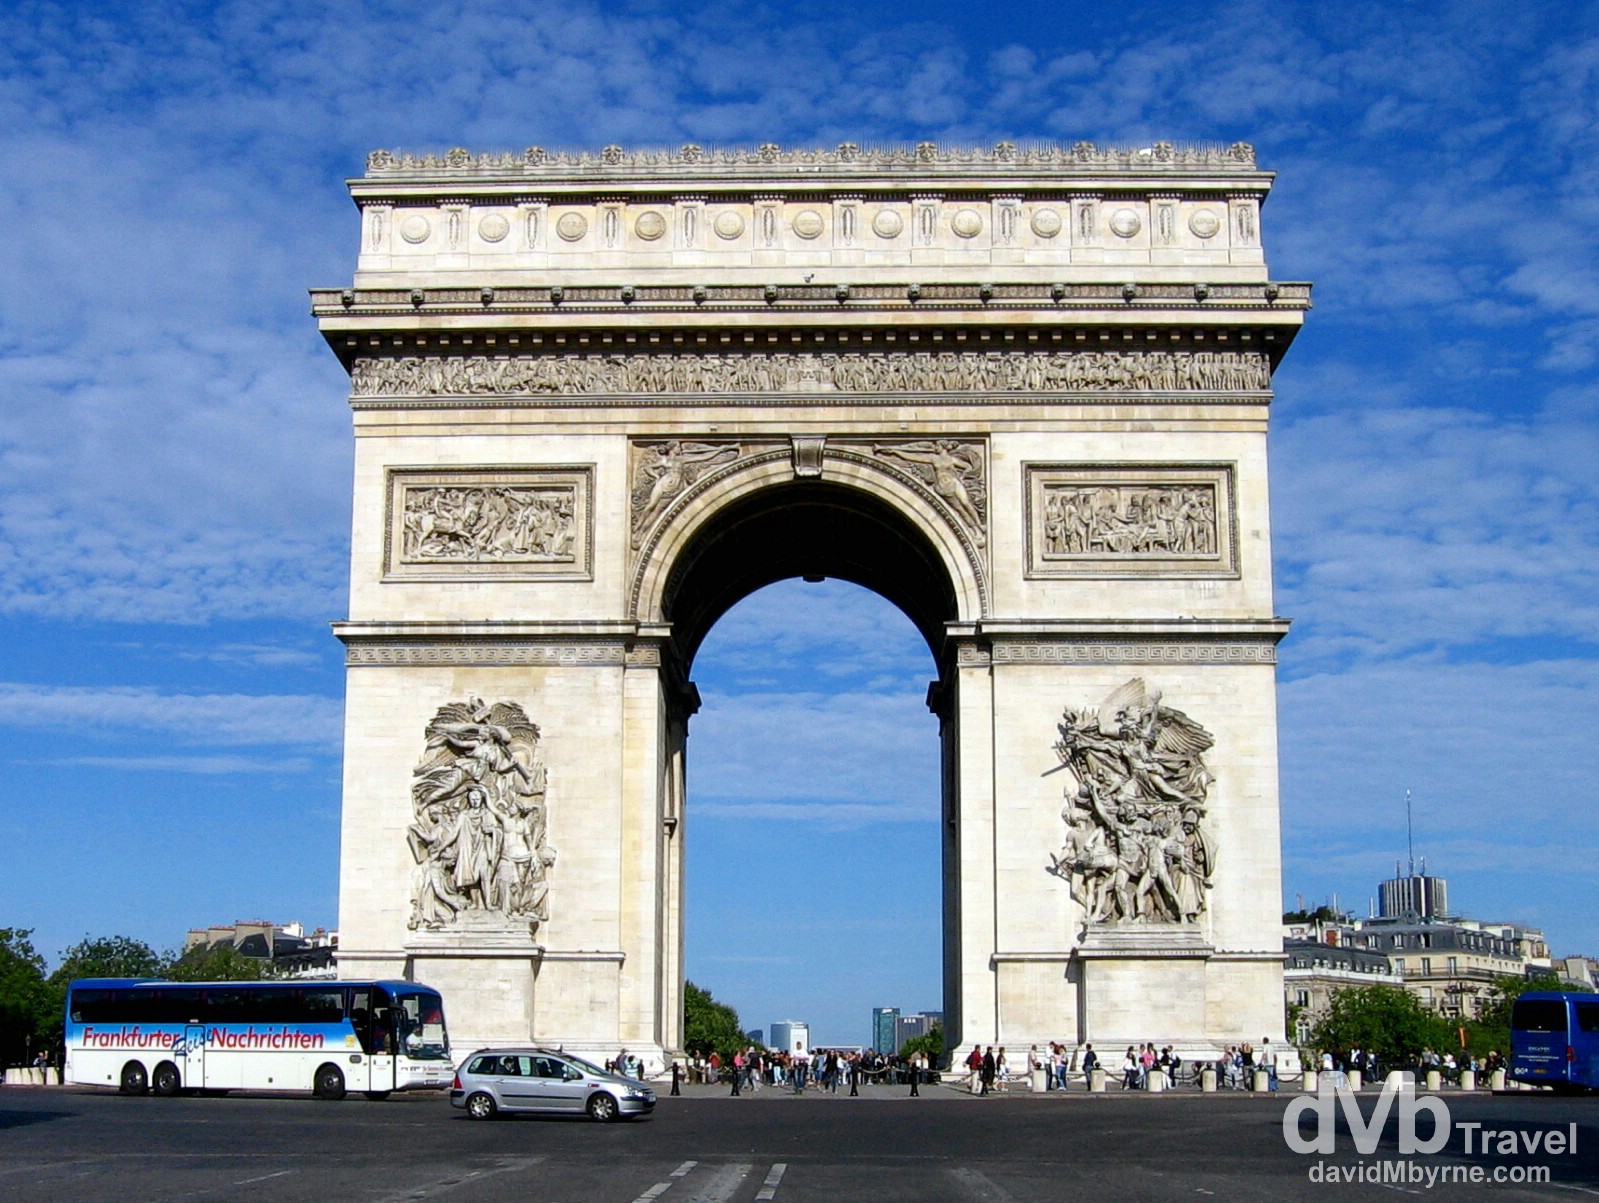  Arc de Triomphe, Paris, France. August 18th, 2007.